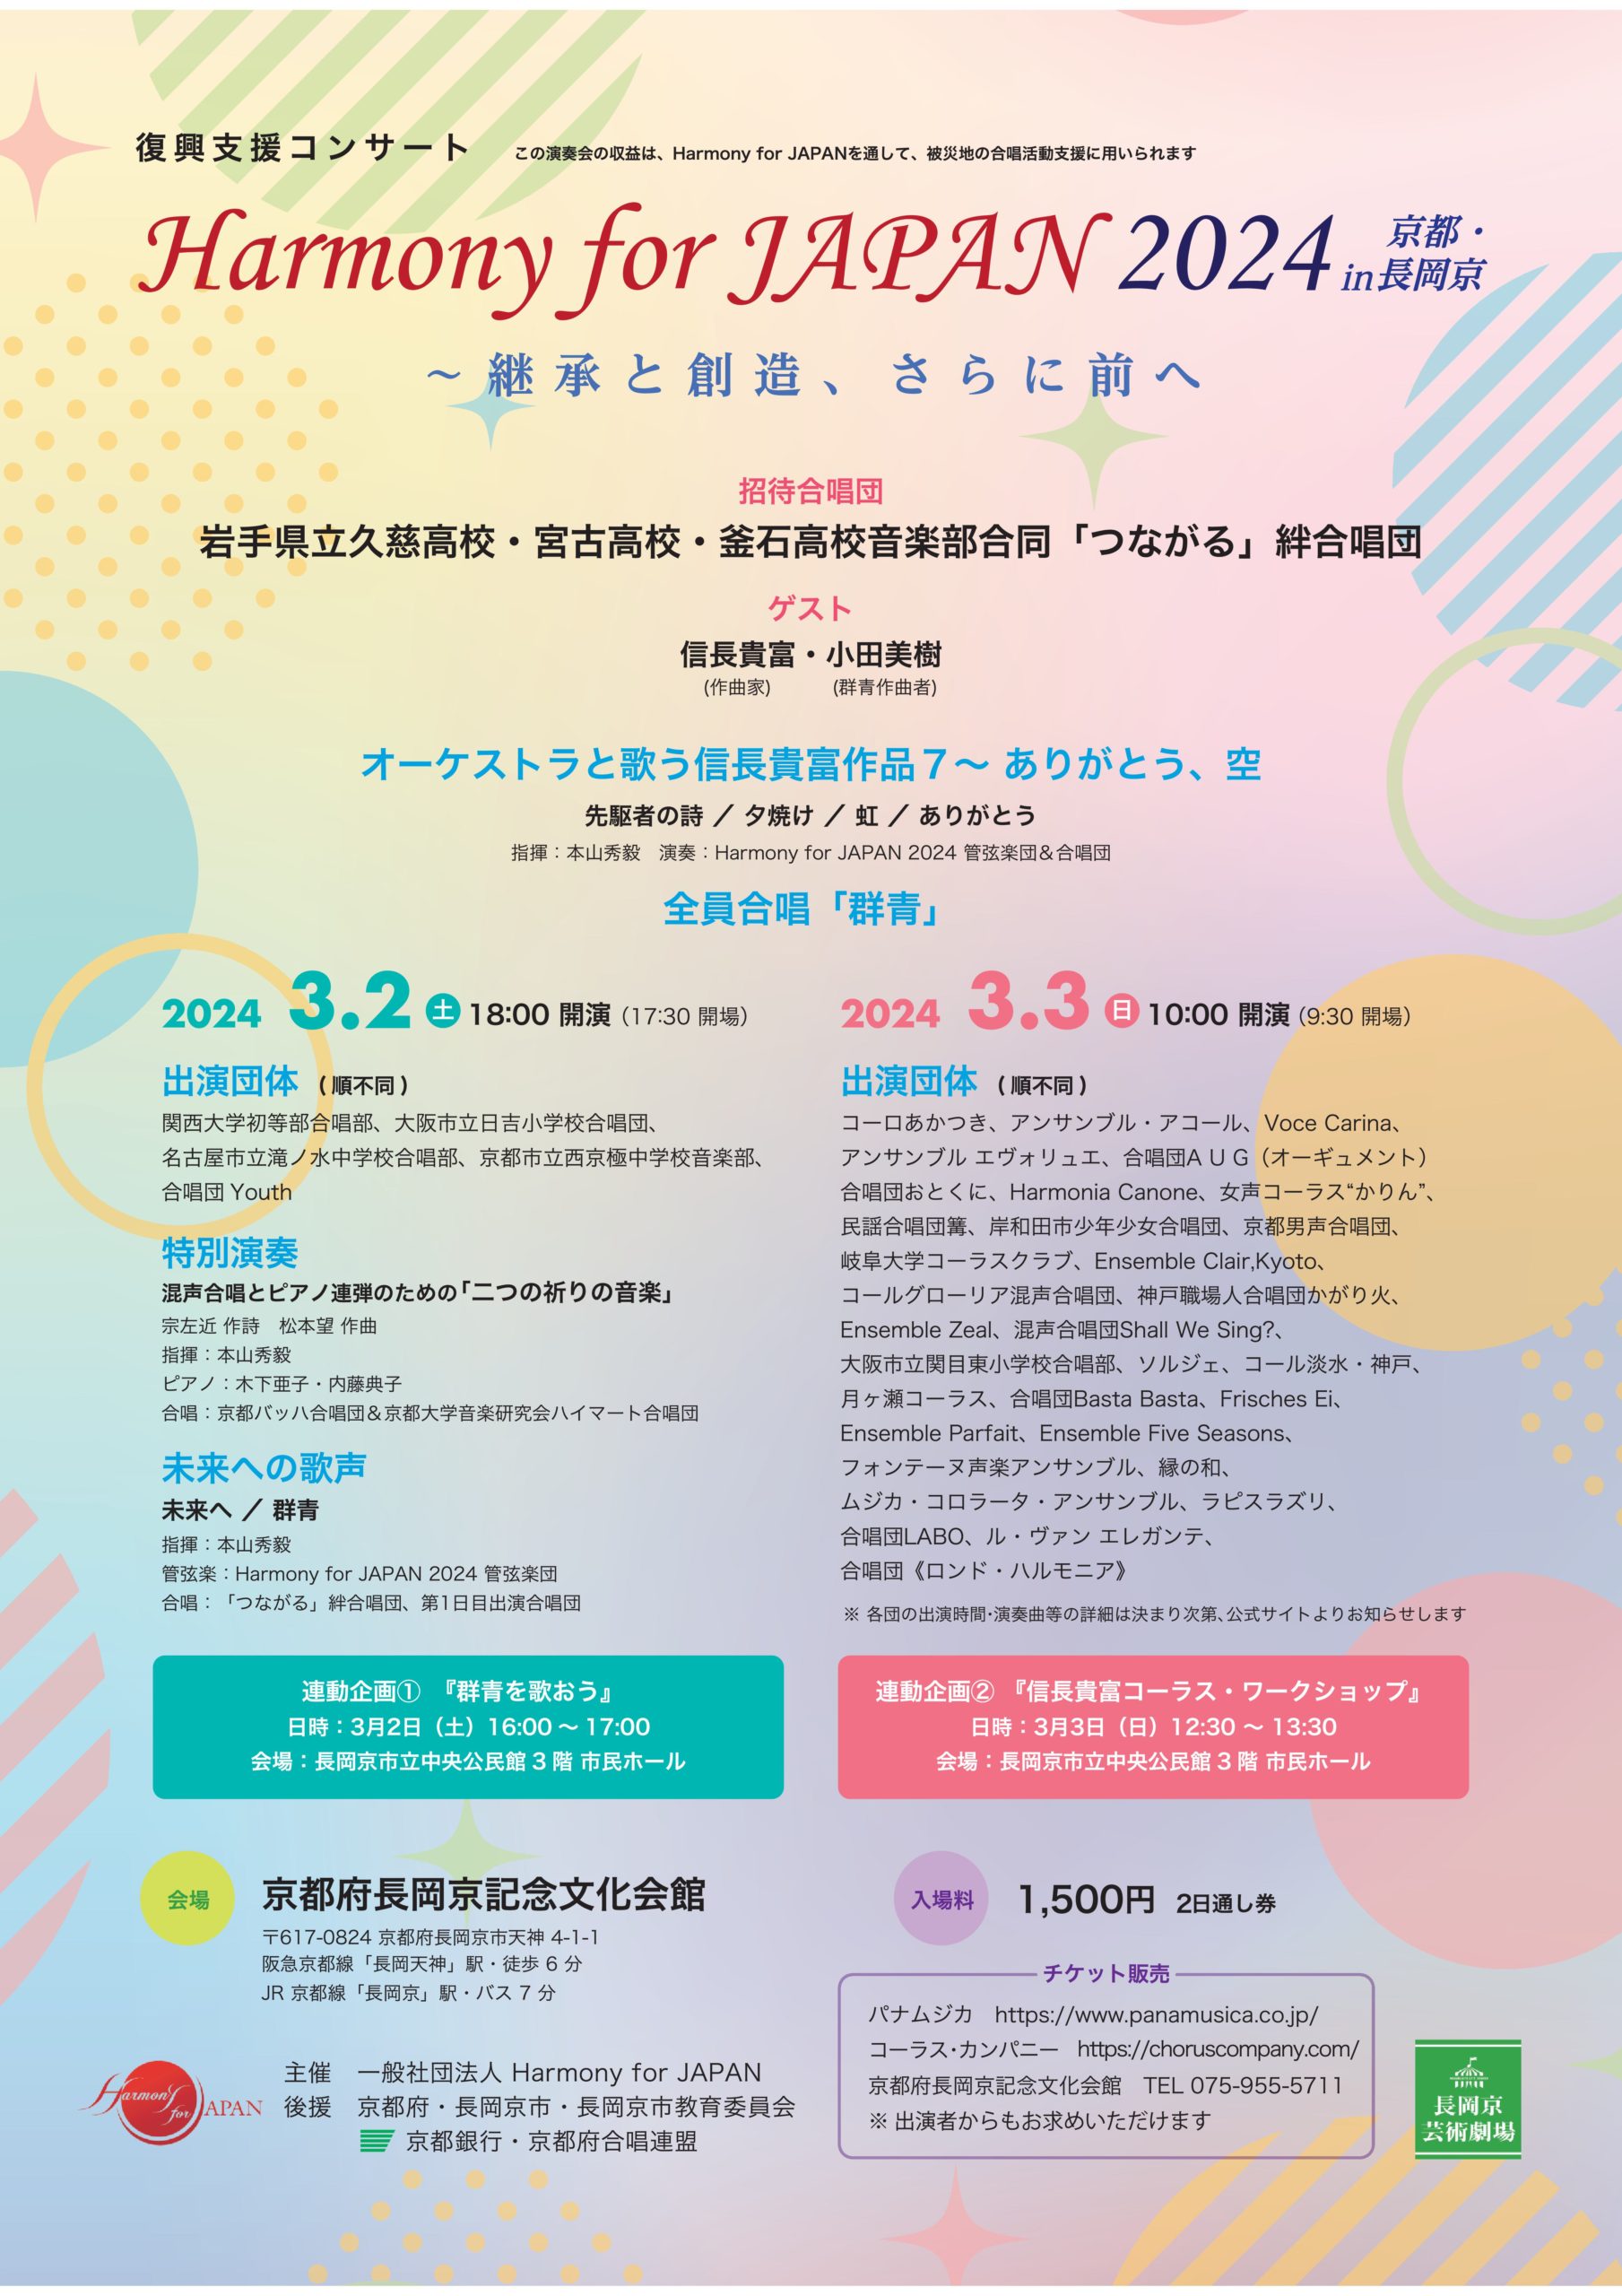 復興支援コンサート「Harmony for JAPAN 2024」